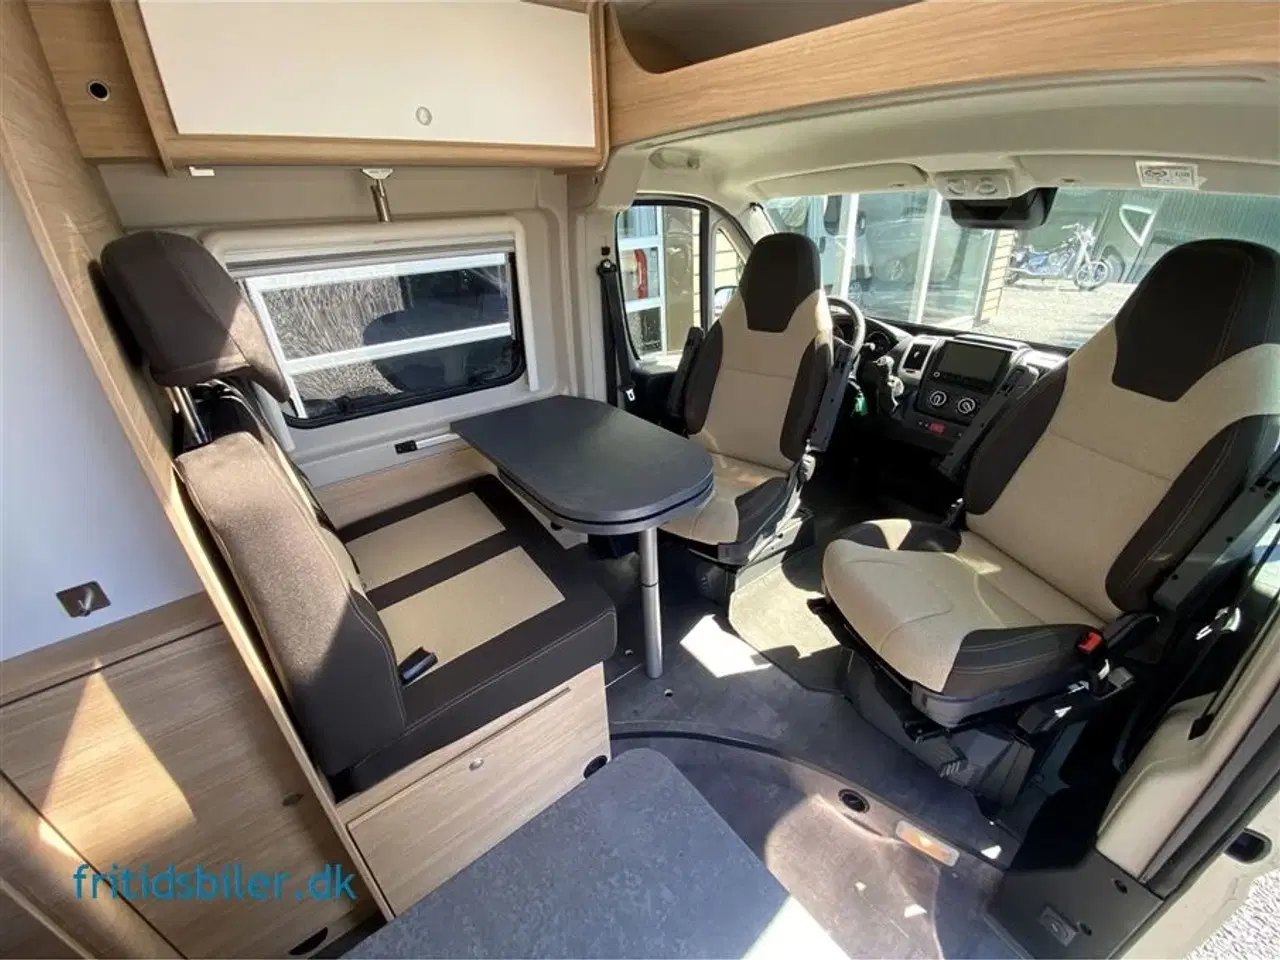 Billede 6 - 2022 - RoadCar R 601 140 Hk   Roadcar R601 med køjer og 4 sovepladser den smarte lille campervan til familien på 4